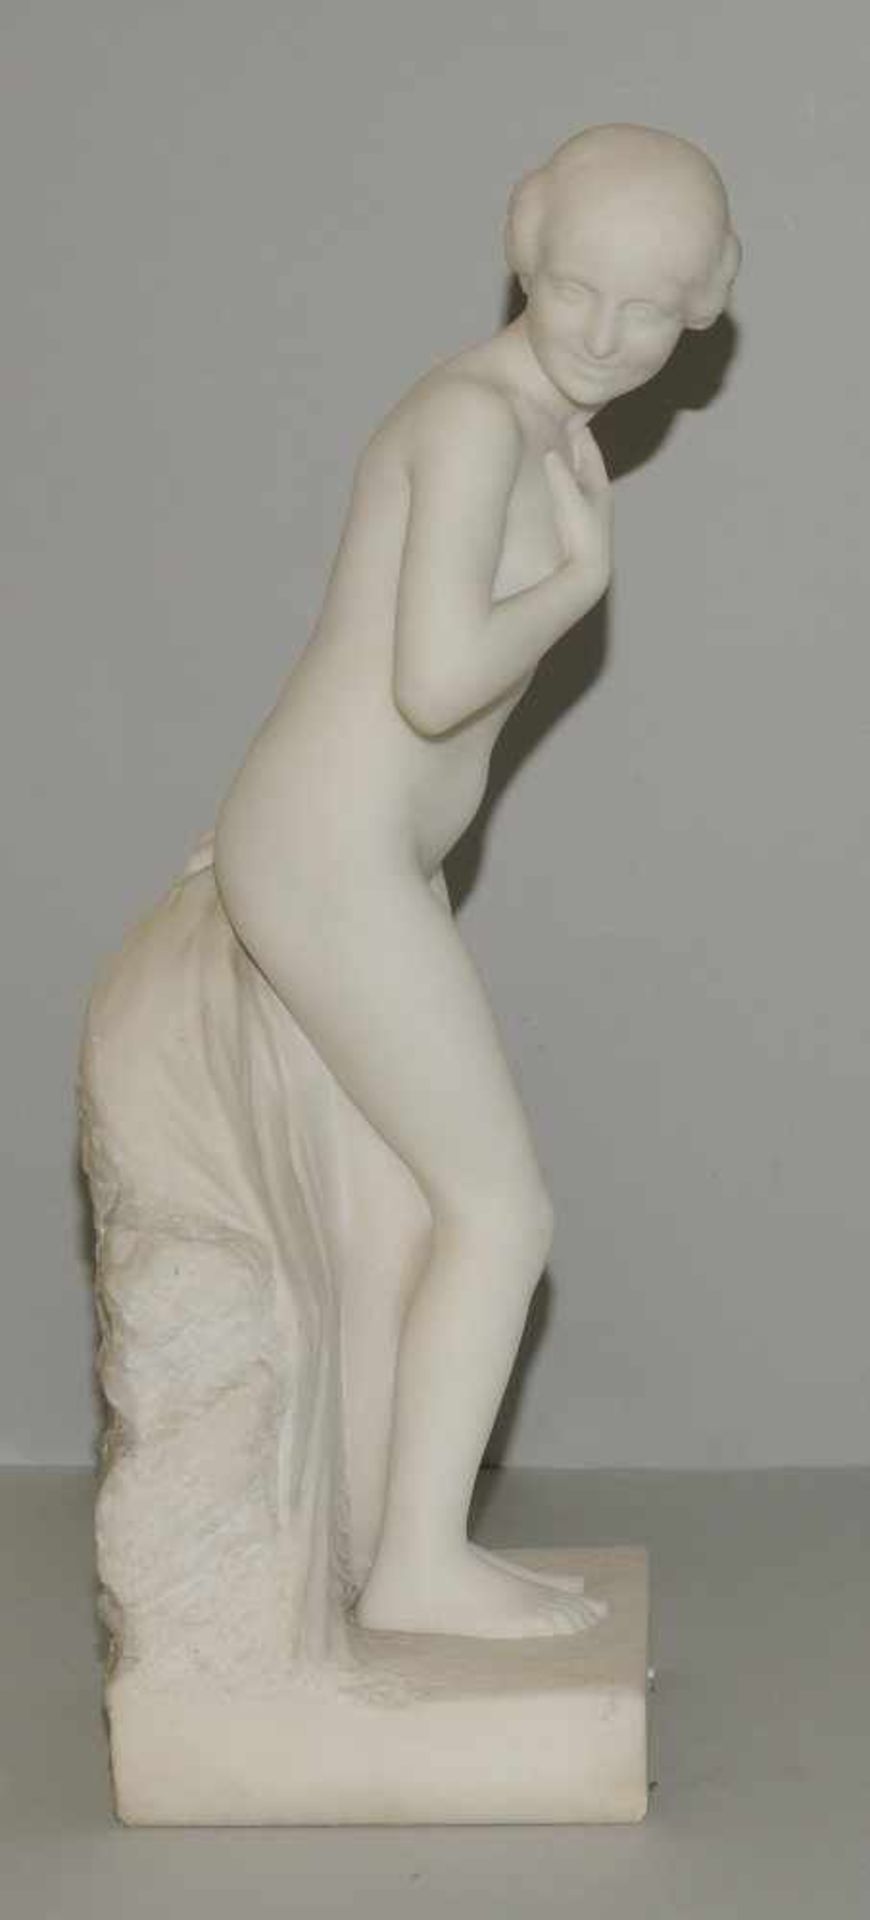 Mädchenakt, E. Molineau Um 1900. Mädchenakt. Weisser Marmor. Bezeichnet: E. Molineau. H 74 cm. - Bild 5 aus 9